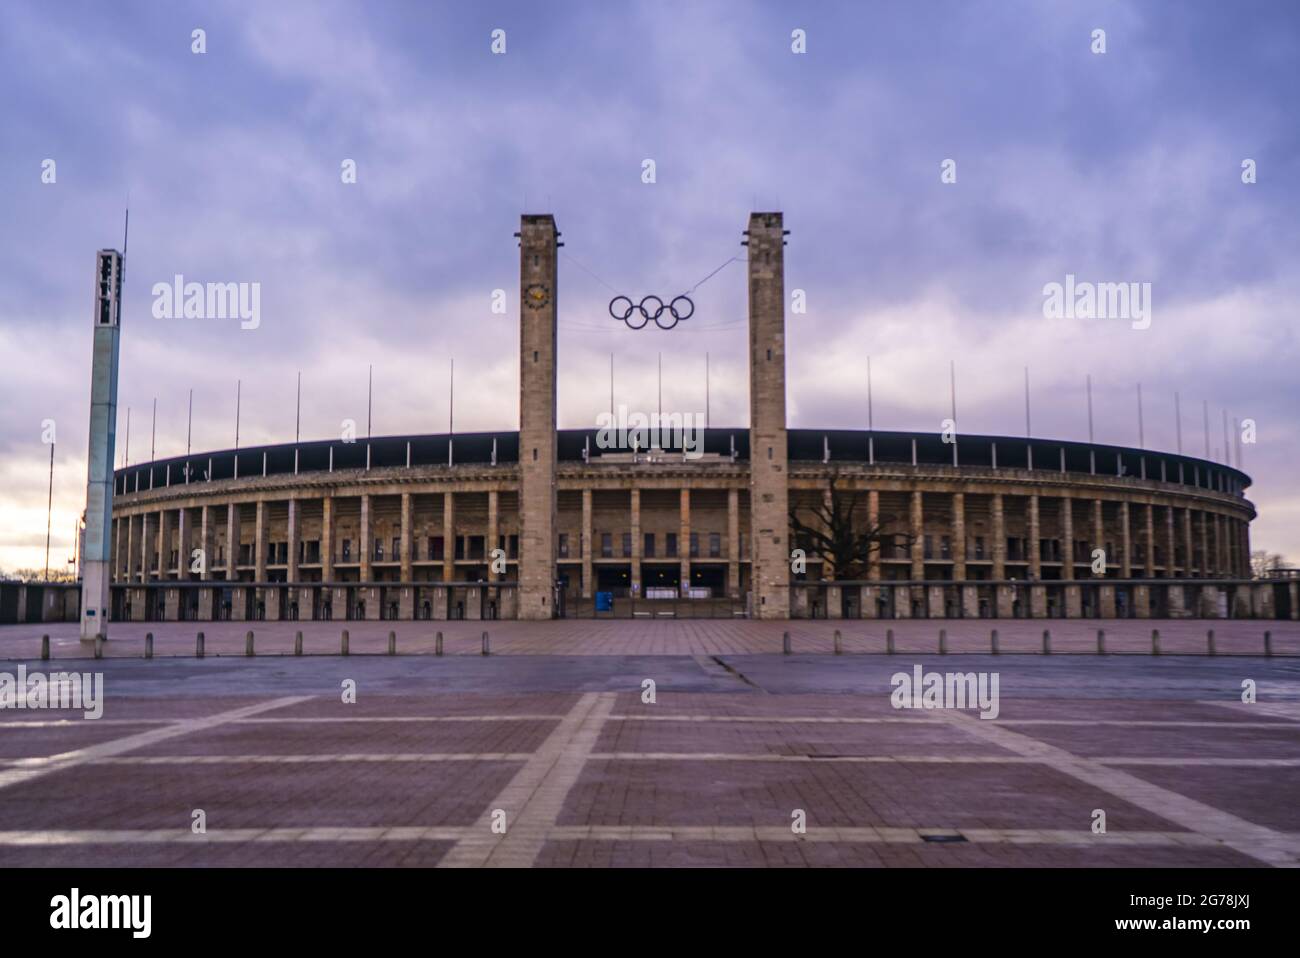 Olympiastadion Berlin à Olympiaplatz à Berlin - célèbre stade sportif - photographie de voyage Banque D'Images